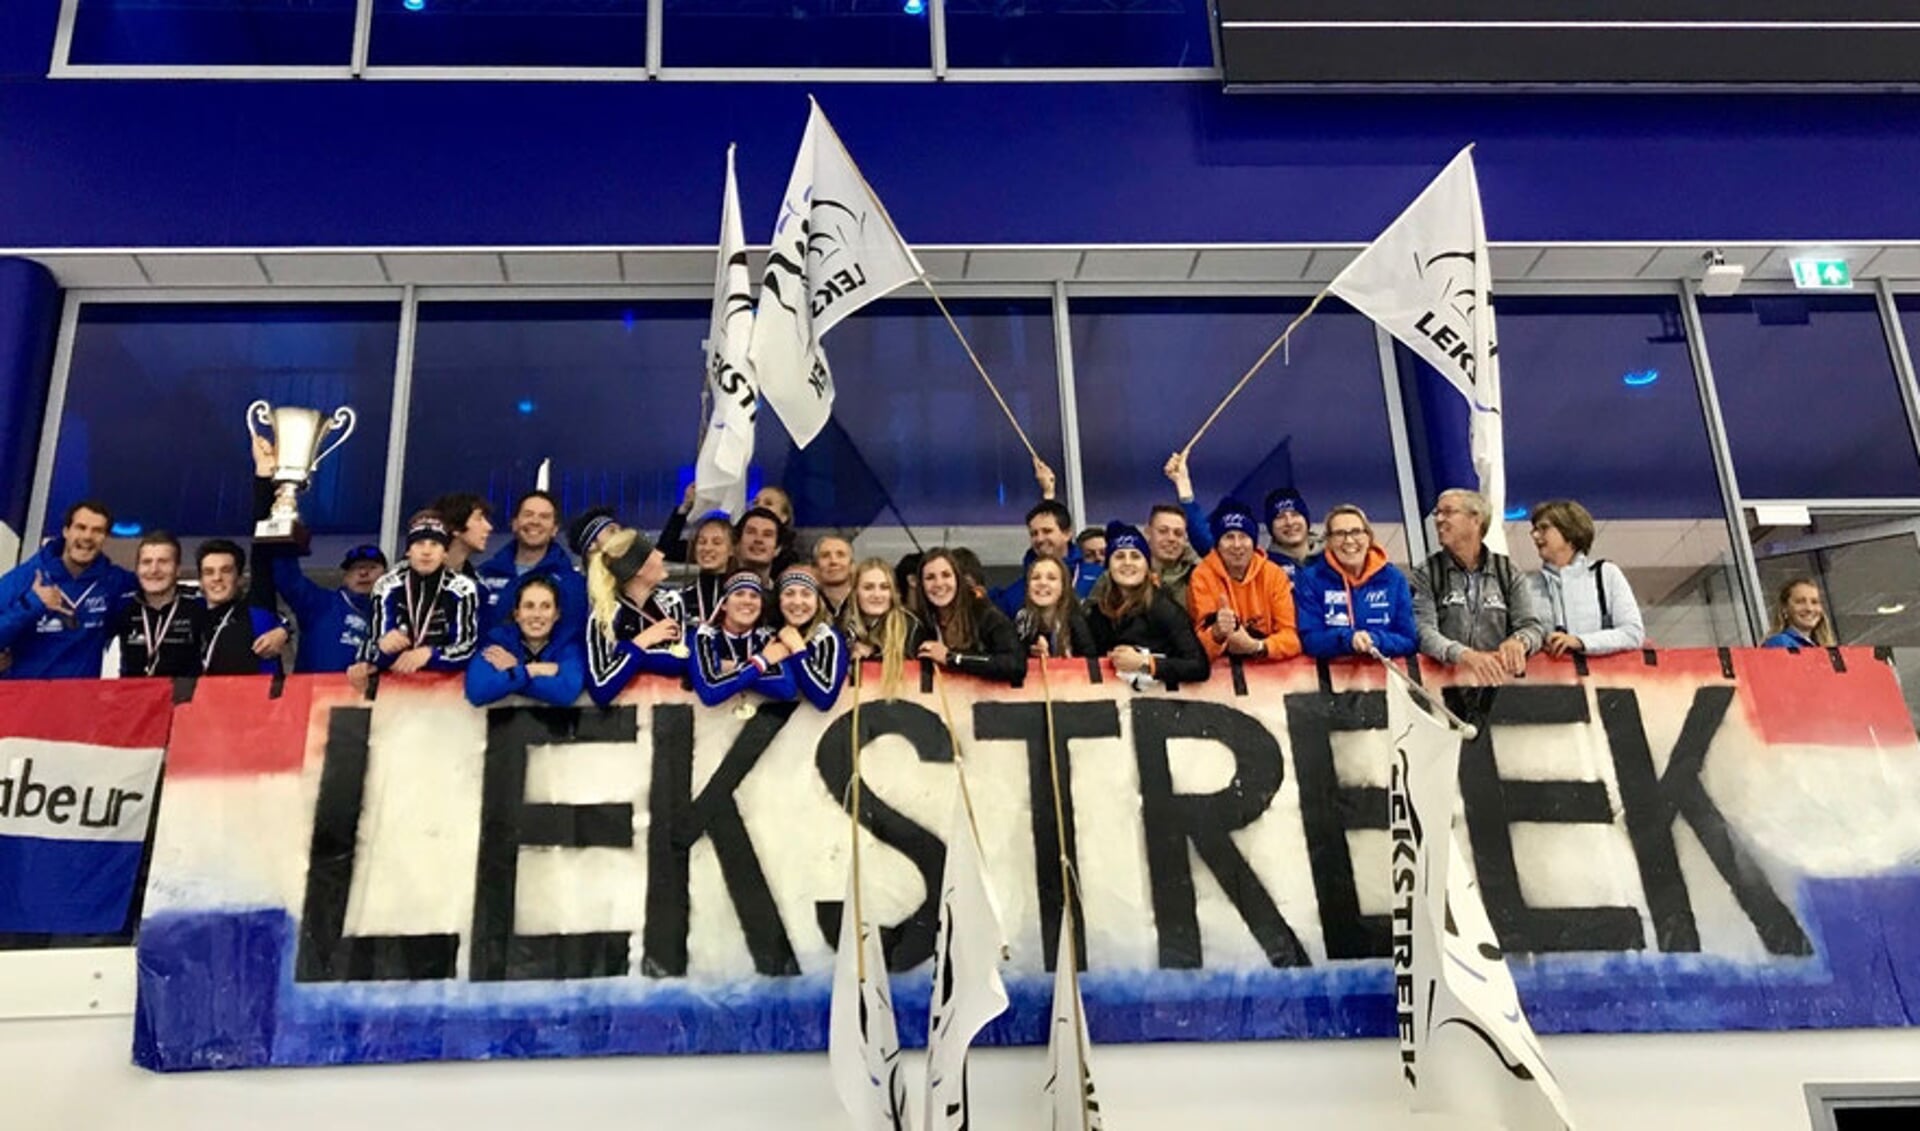 • STV Lekstreek, de beste schaatsclub van Nederland.